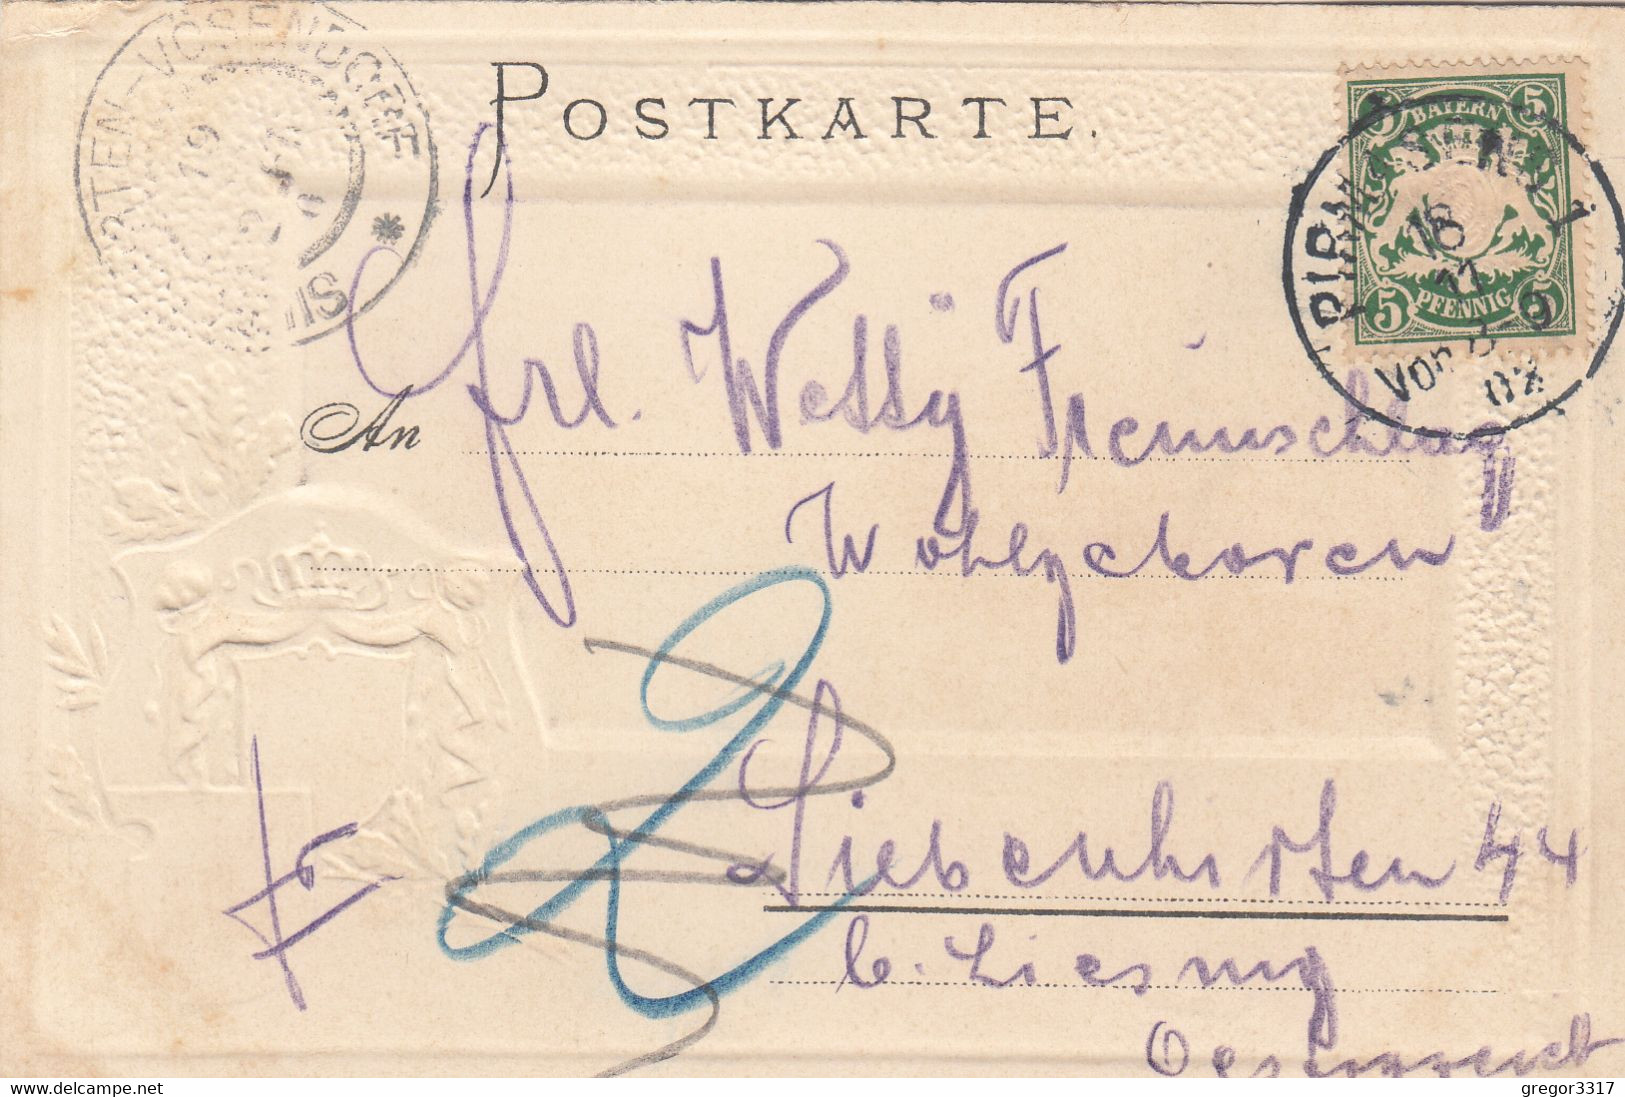 9862) PIRMASENS - Wunderschöne WAPPEN PRÄGE LITHO - Häuser Der Stasdt - Passepartoutkarte 1902 ! - Pirmasens